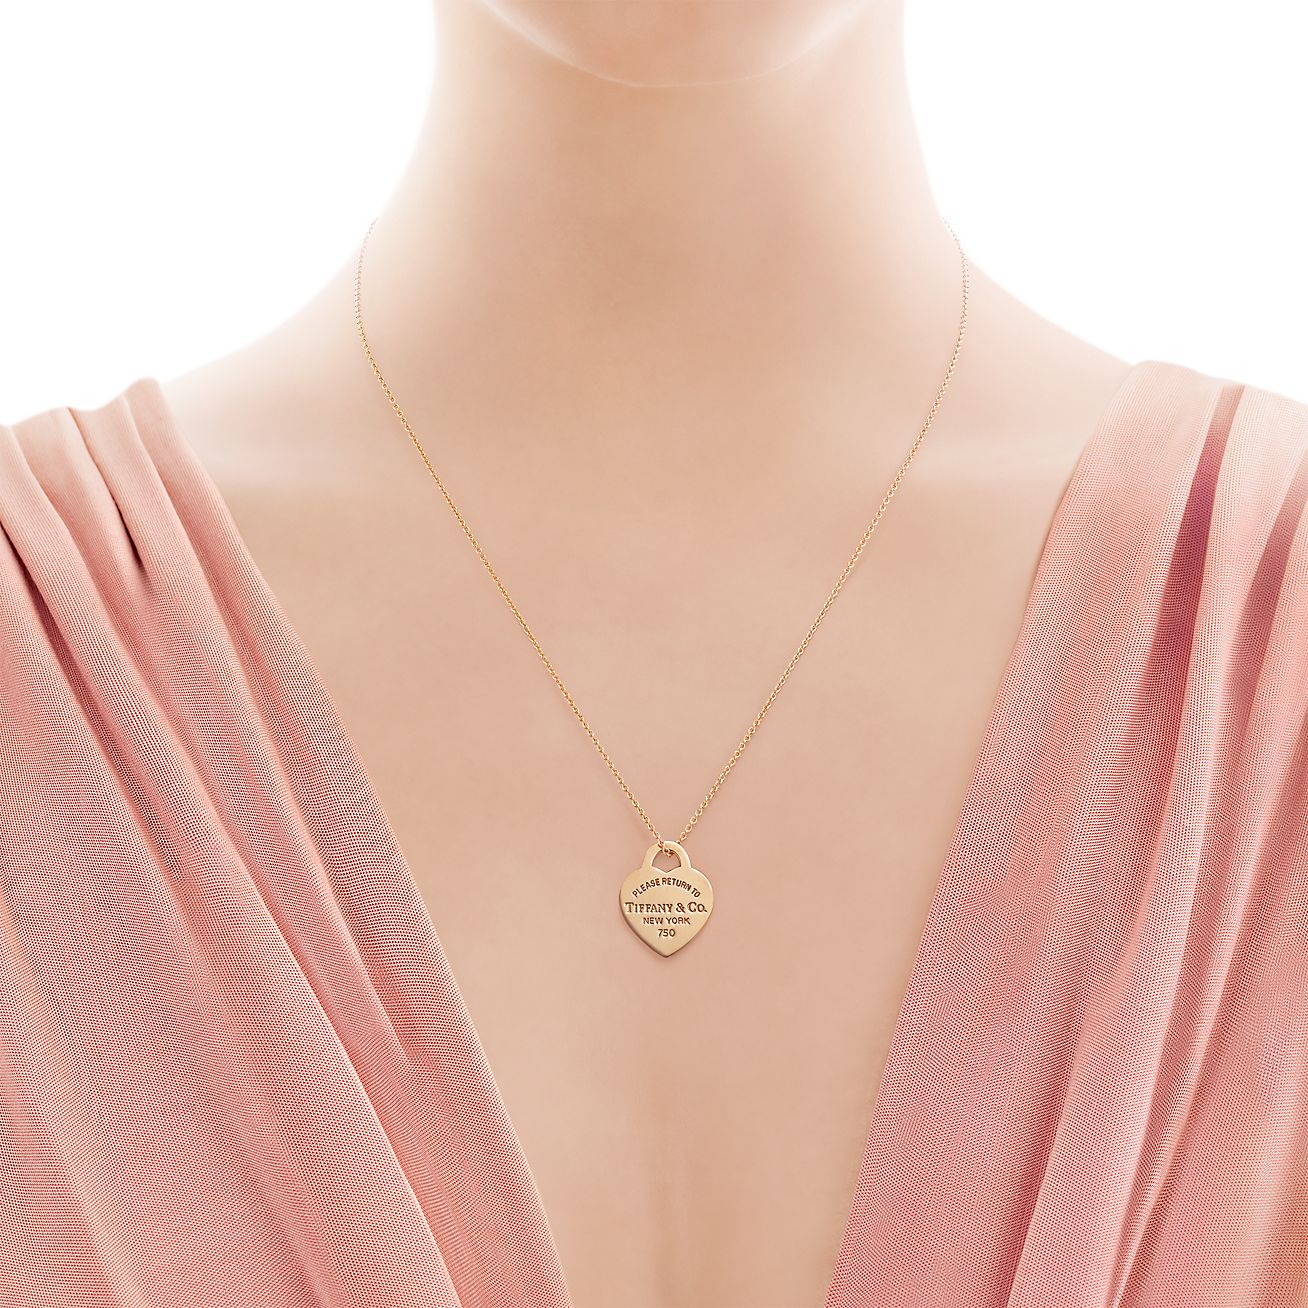 tiffany heart tag with key pendant